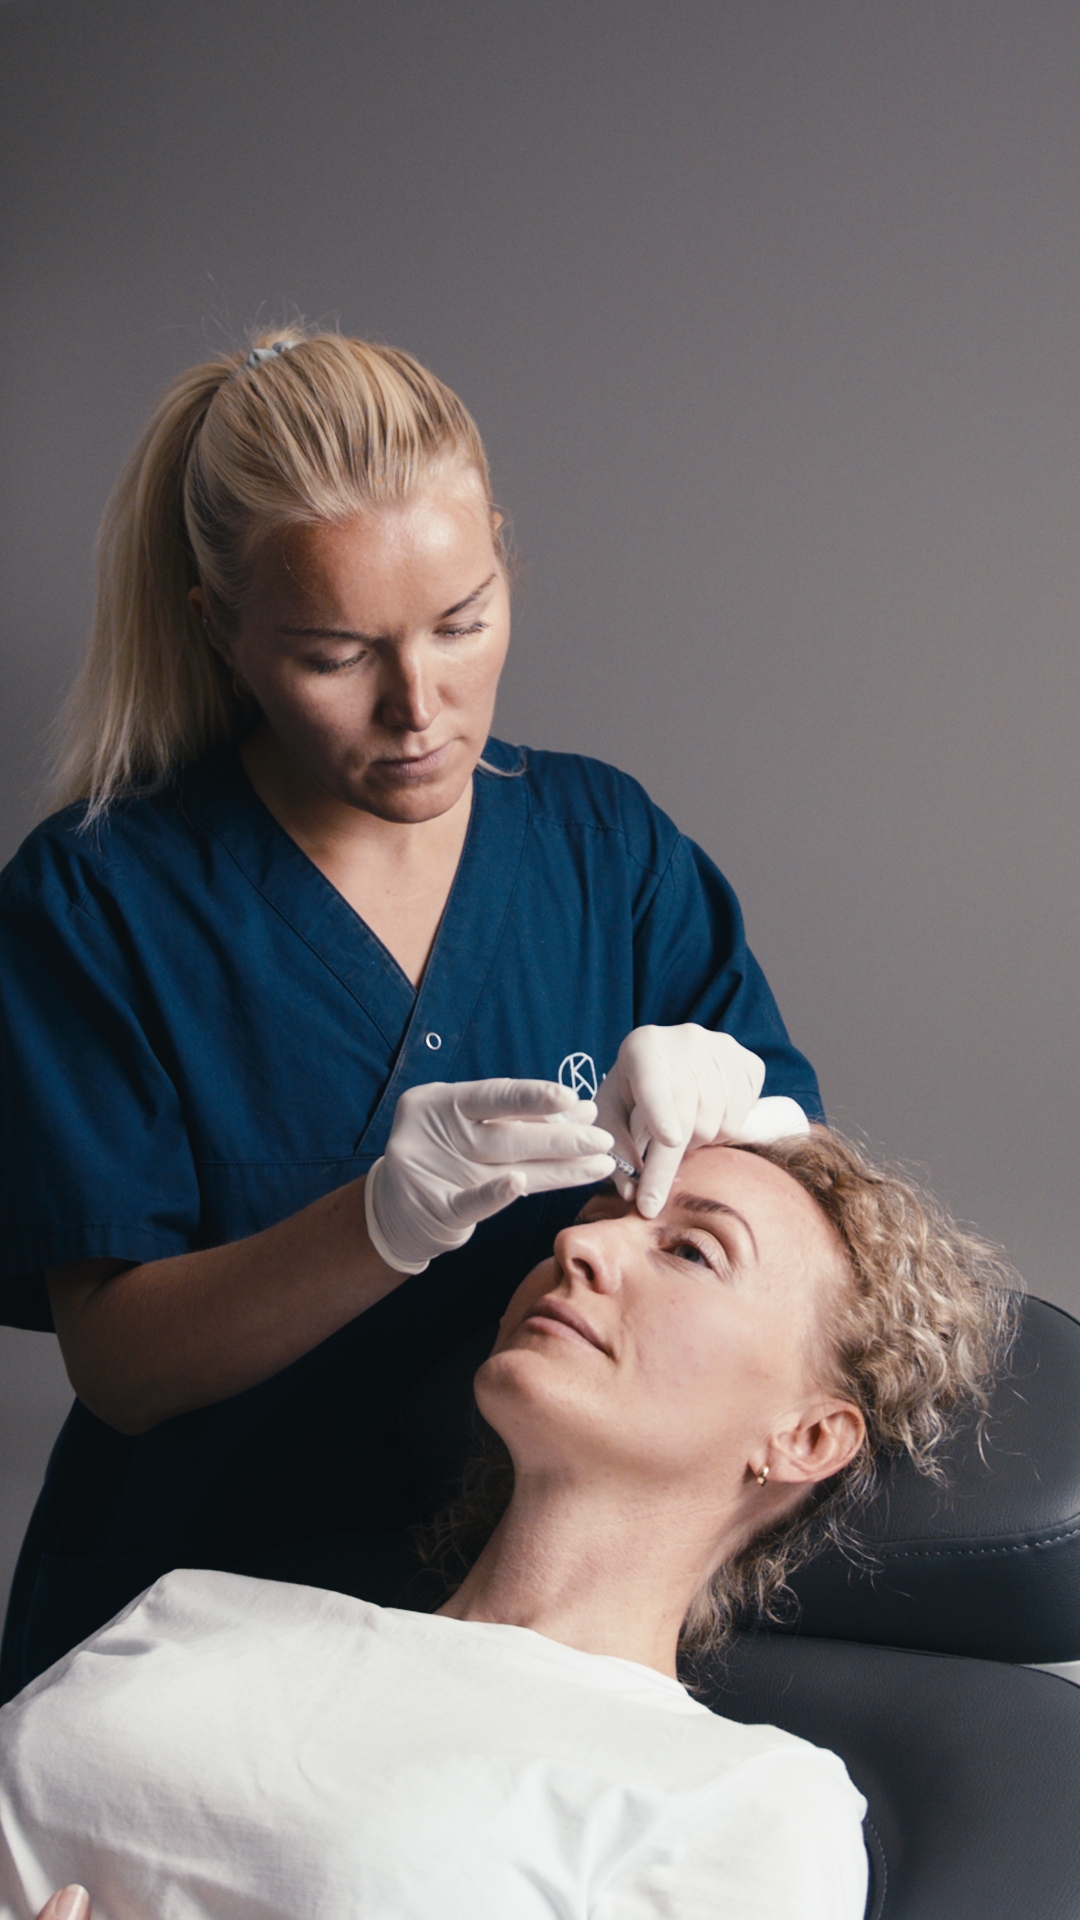 Kosmetisk dermatologisk sykepleier Eva Mehlgård. Har over 10 års erfaring med injeksjonsbehandlinger og medisisnk hudpleie. Eva ivaretar sine pasienter på beste måte og er opptatt av naturlige resultater.